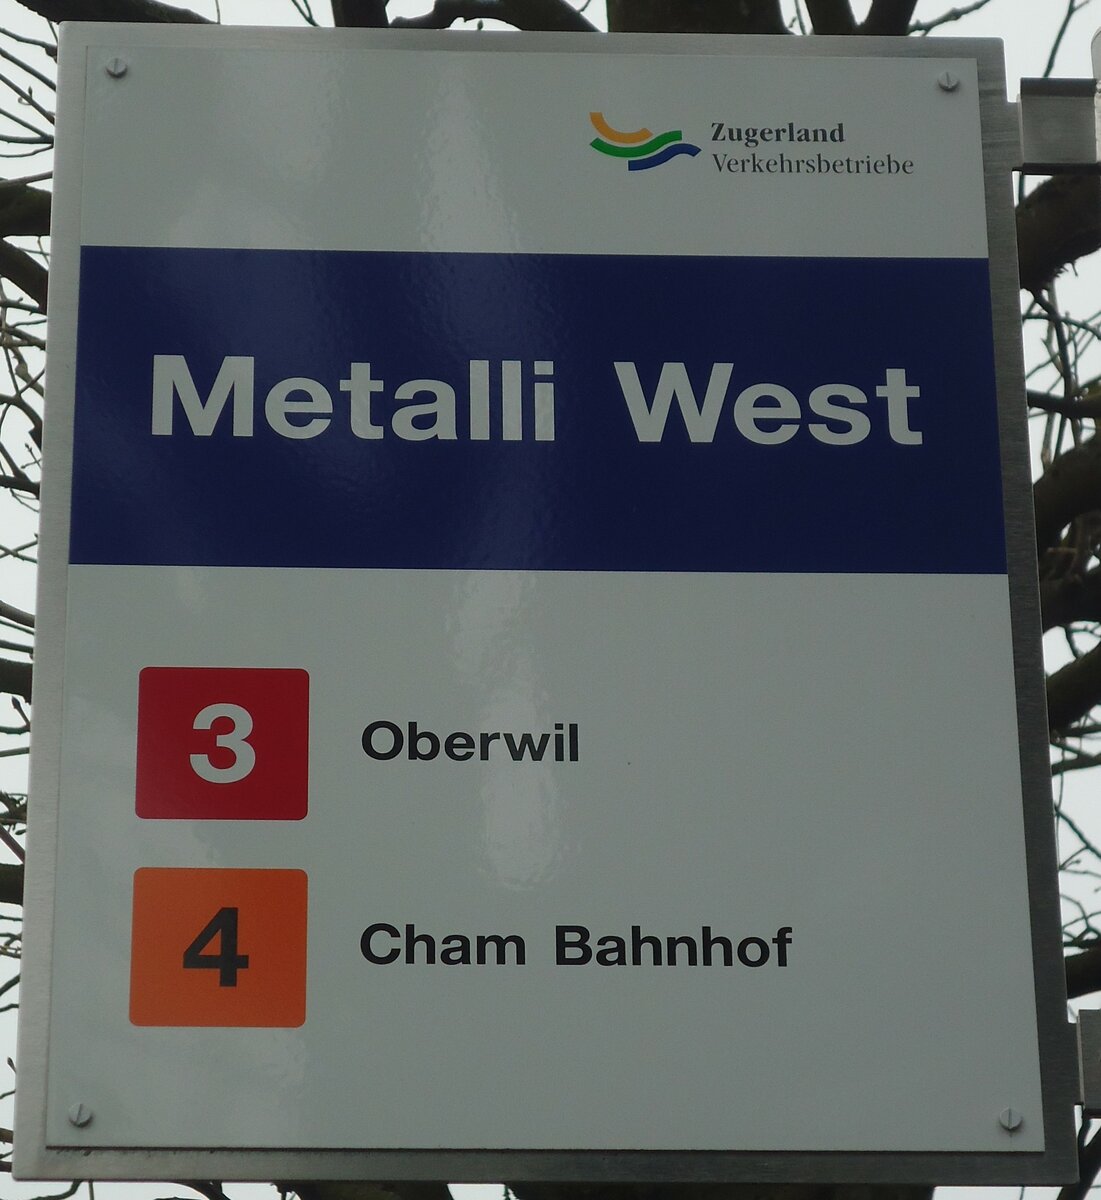 (137'986) - Zugerland Verkehrsbetriebe-Haltestellenschild - Zug, Metalli West - am 6. Mrz 2012